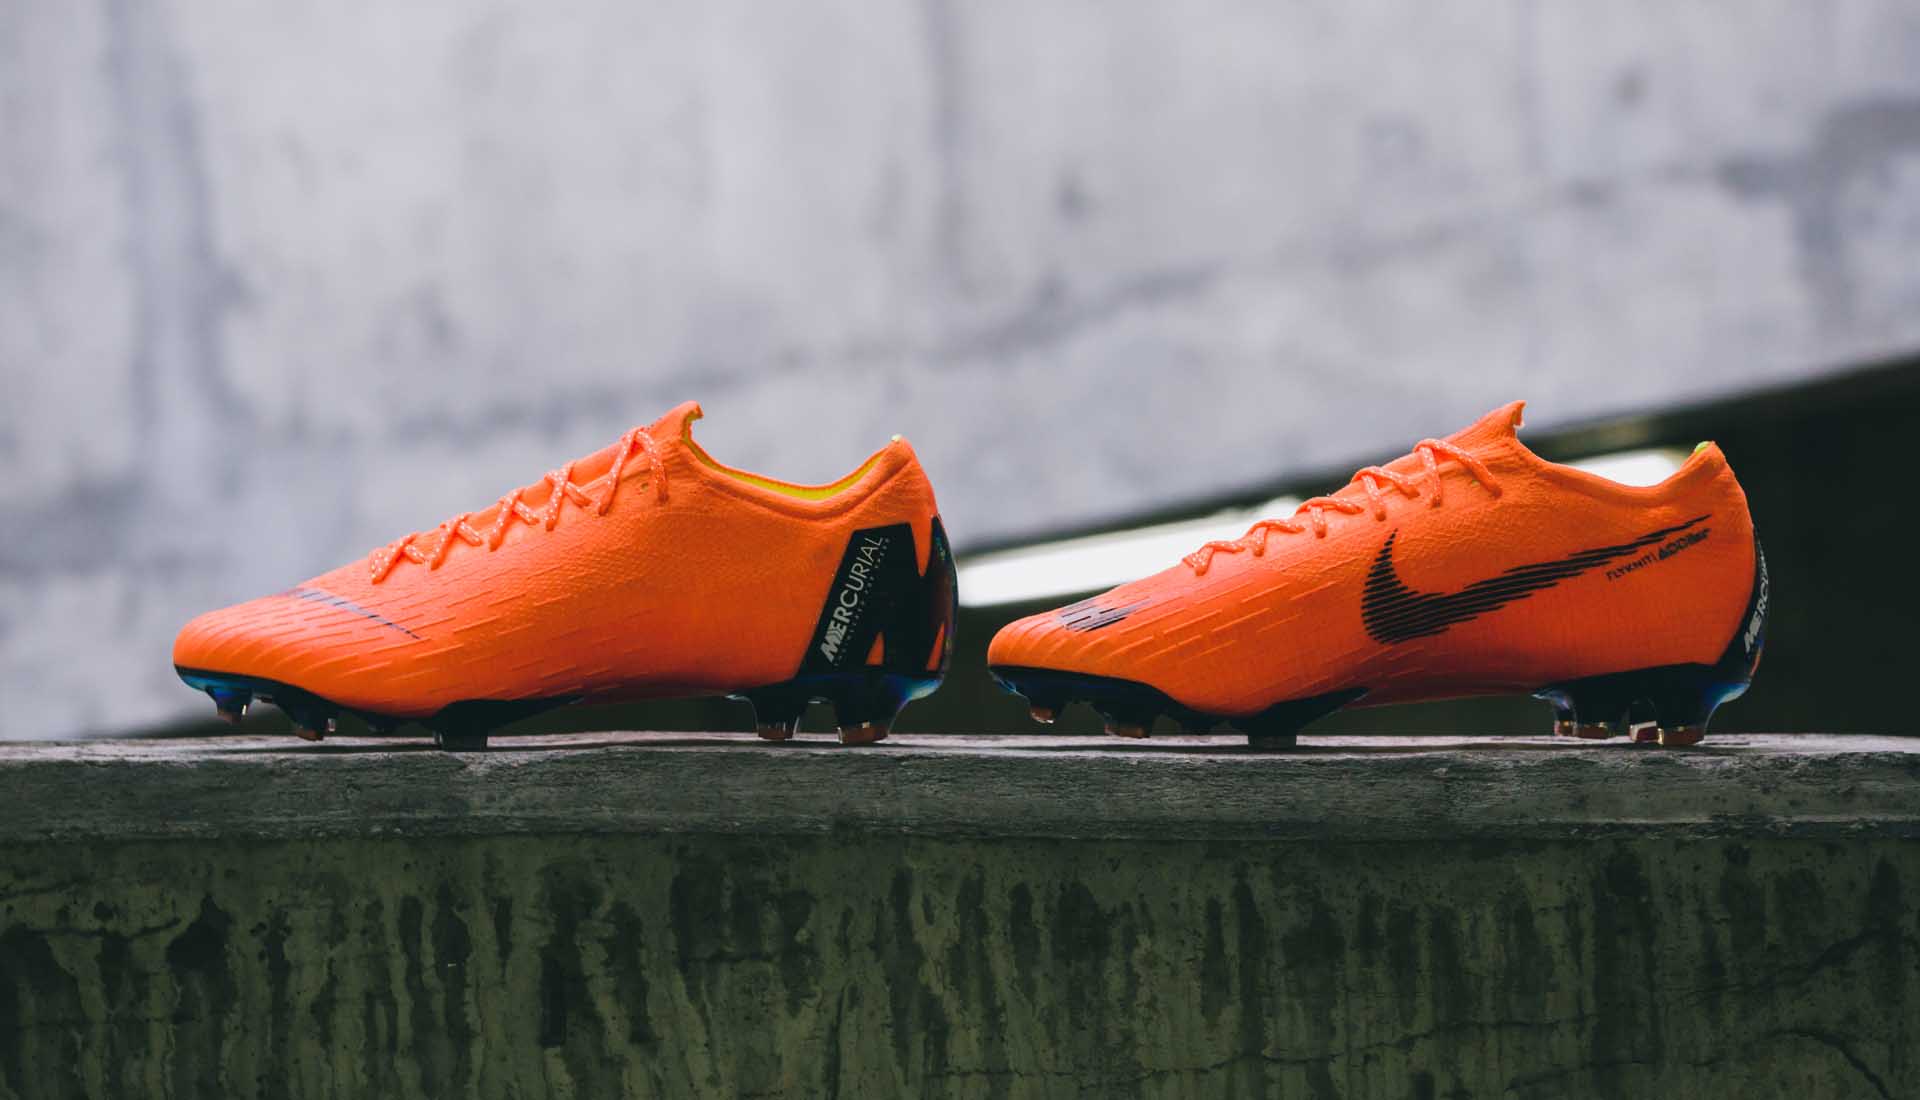 Vẻ đẹp của giày bóng đá chính hãng Nike Mercurial Vapor XII màu cam